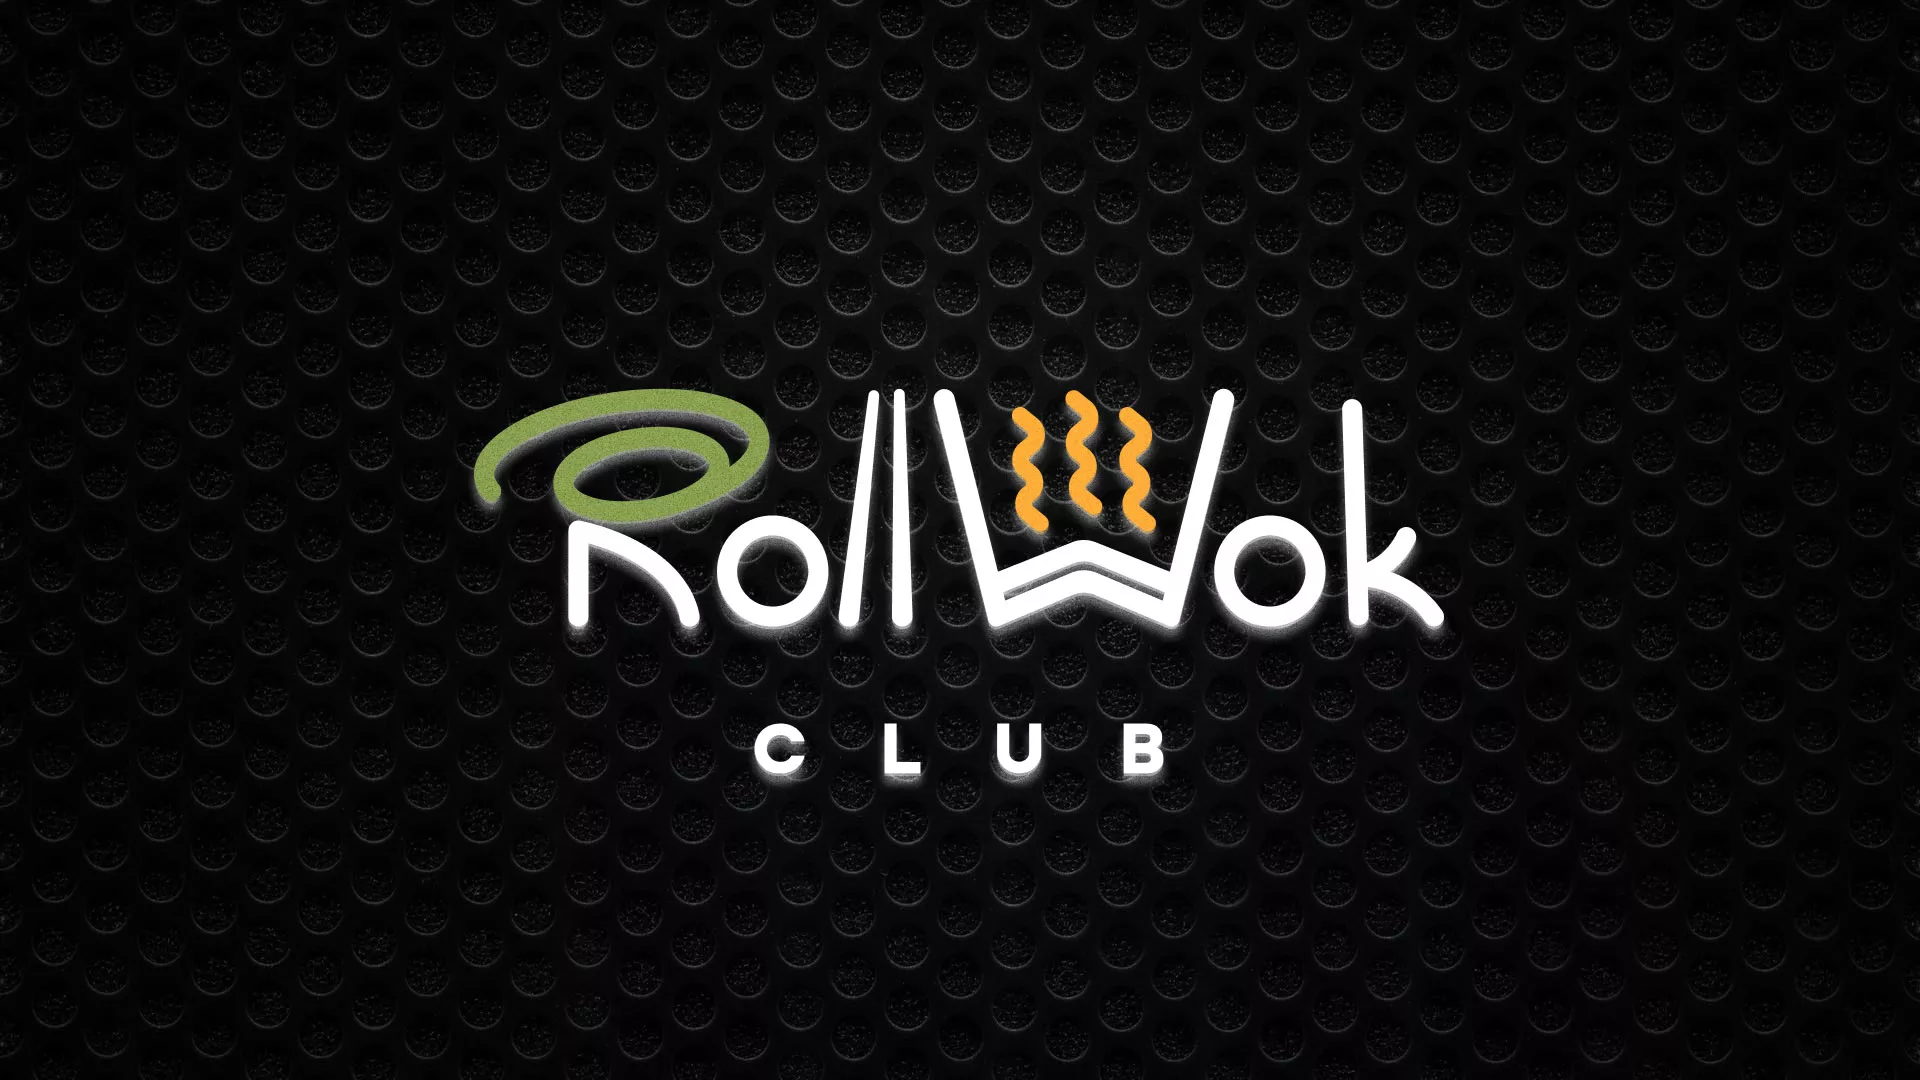 Брендирование торговых точек суши-бара «Roll Wok Club» в Черногорске